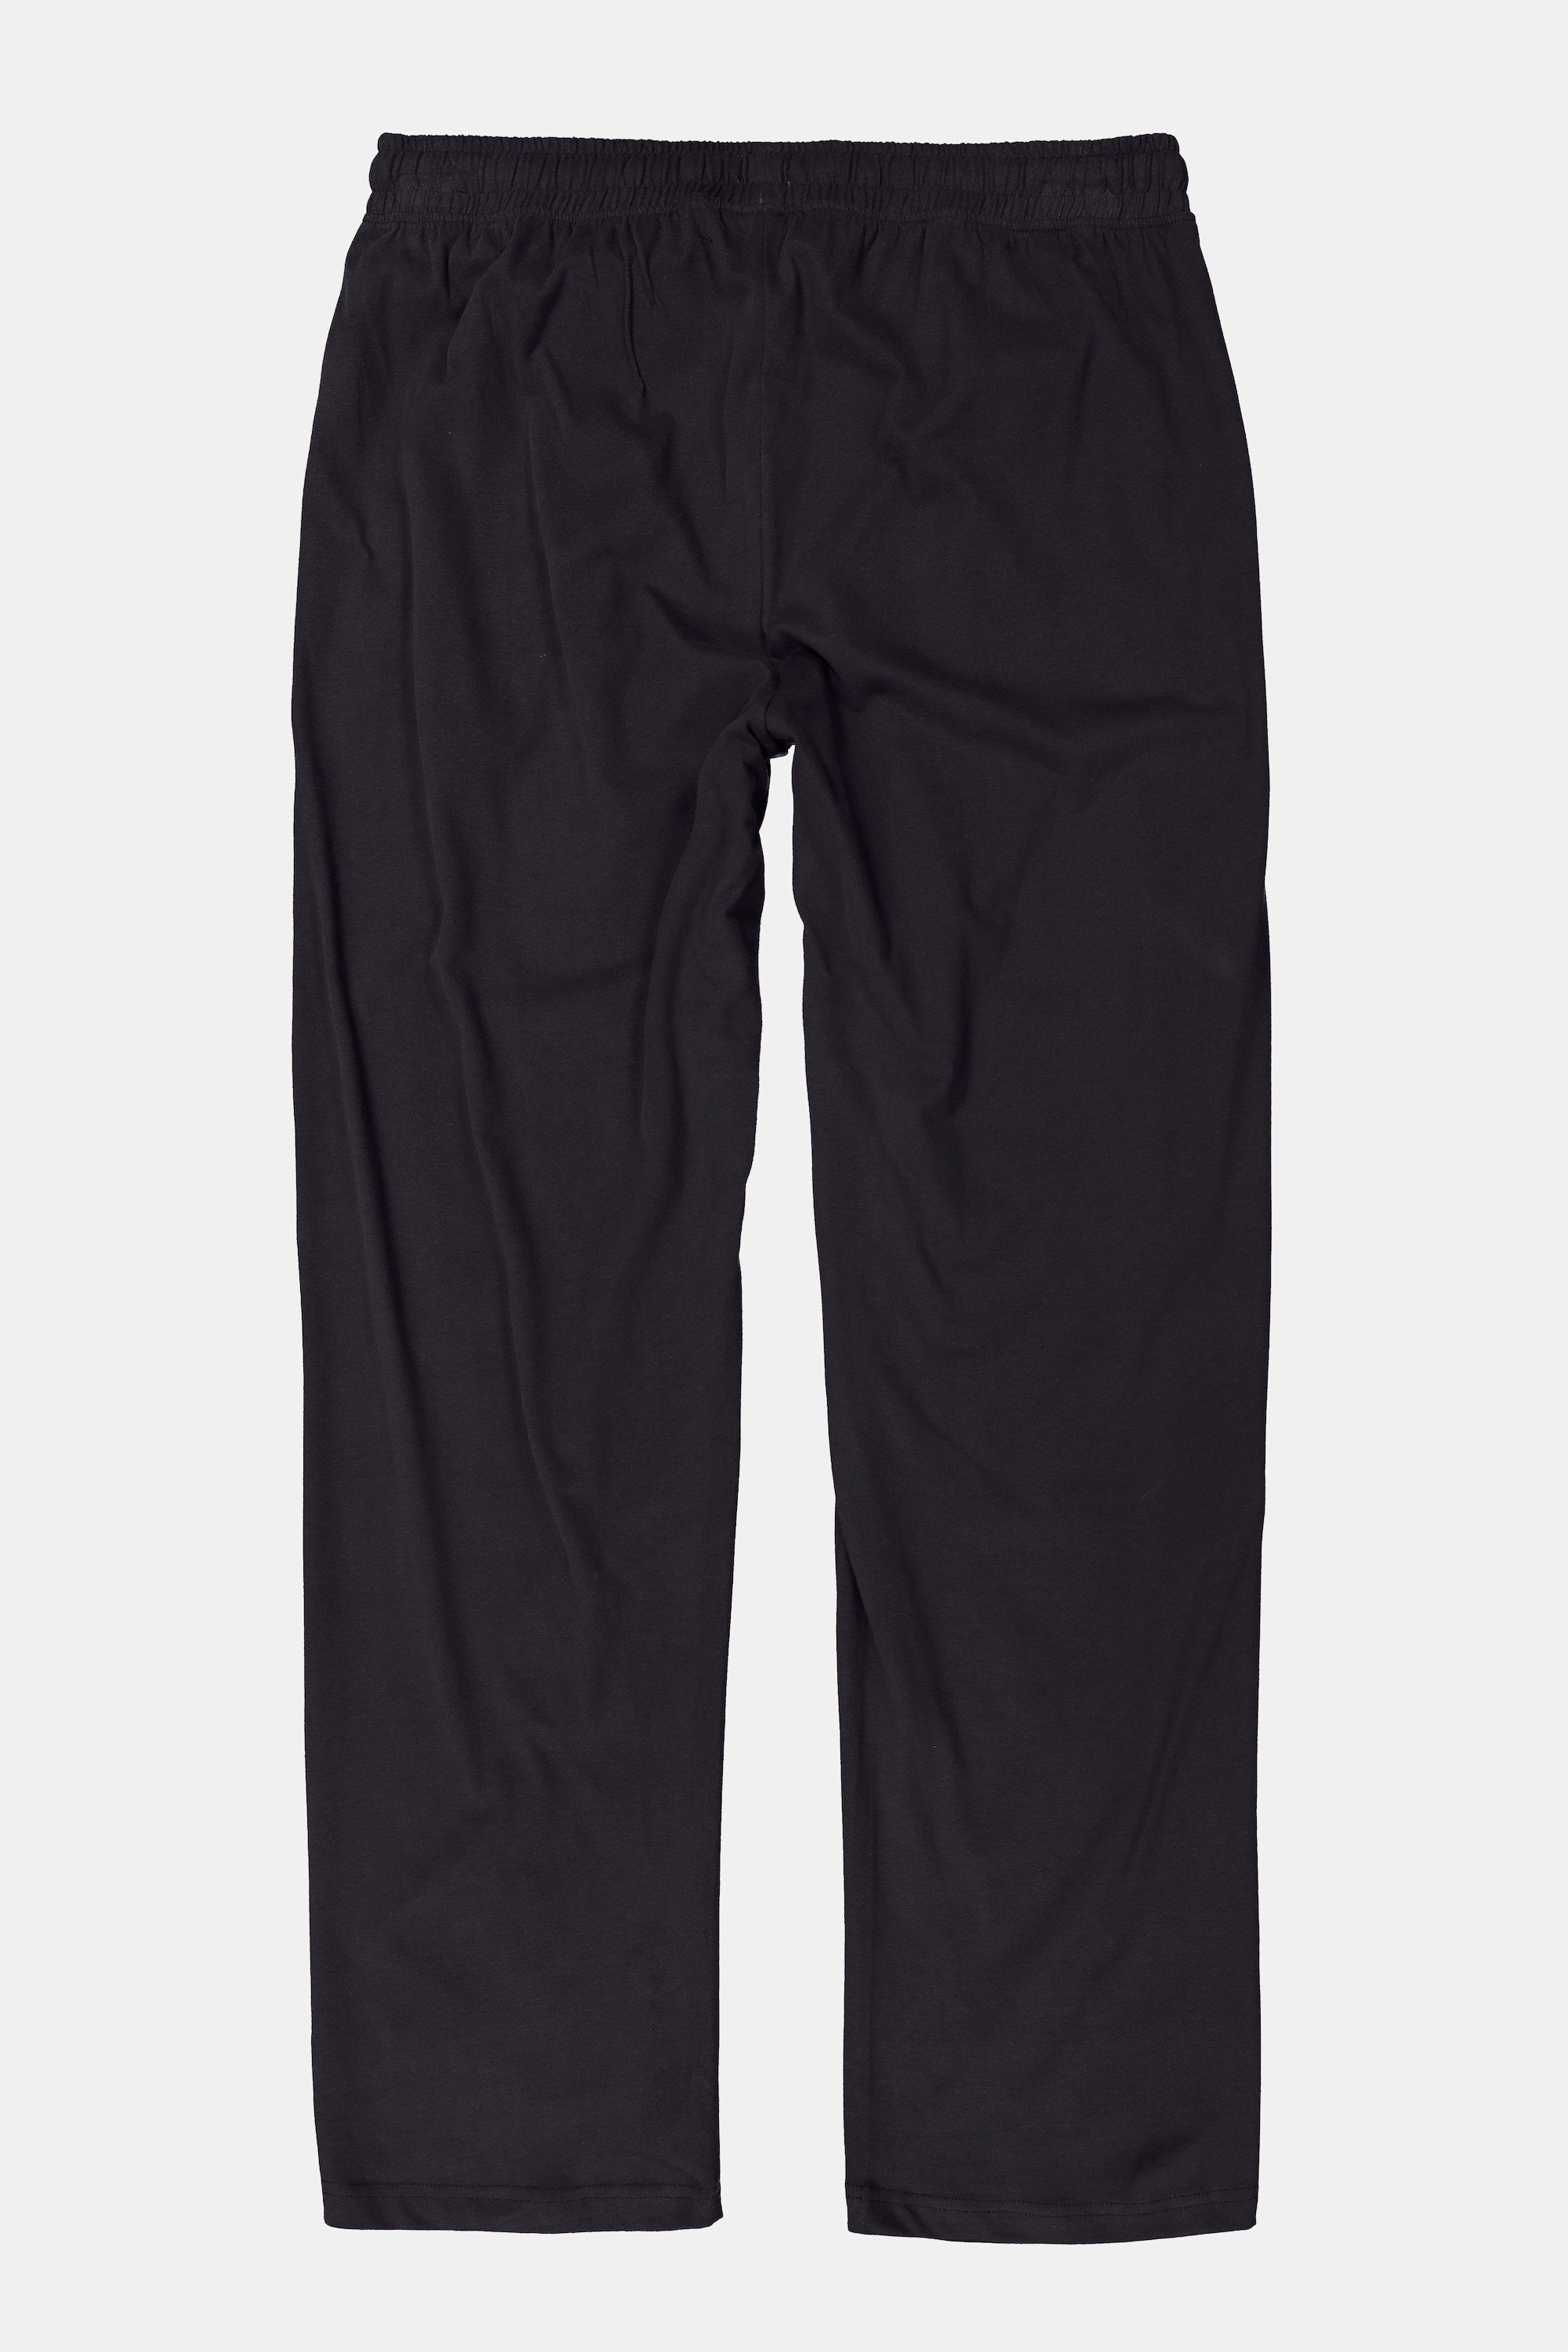 lange Schlafanzug-Hose Elastikbund Schlafanzug schwarz Form Homewear JP1880